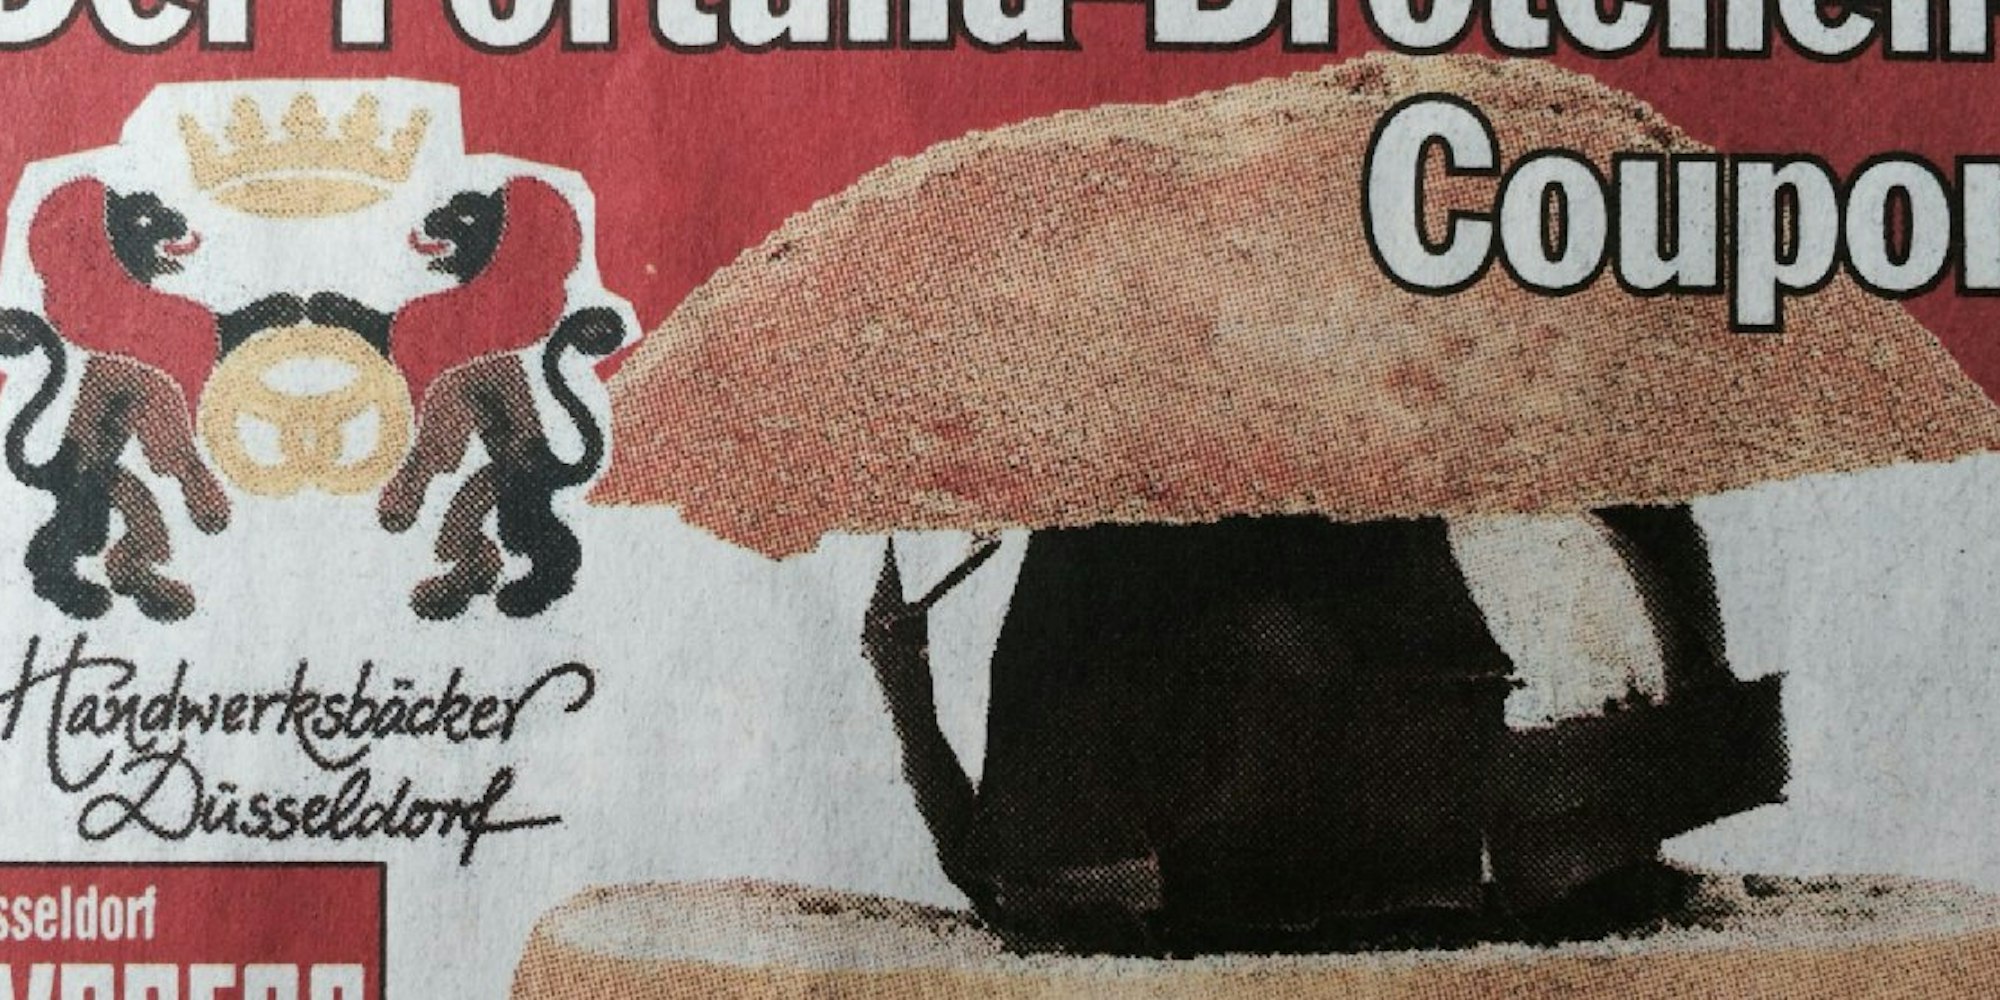 Mit diesem Coupon aus der Zeitung können die Düsseldorfer EXPRESS-Leser bei den Handwerksbäckern ein Fortuna-Brötchen bis zum 10. Mai für 95 Cent erwerben.